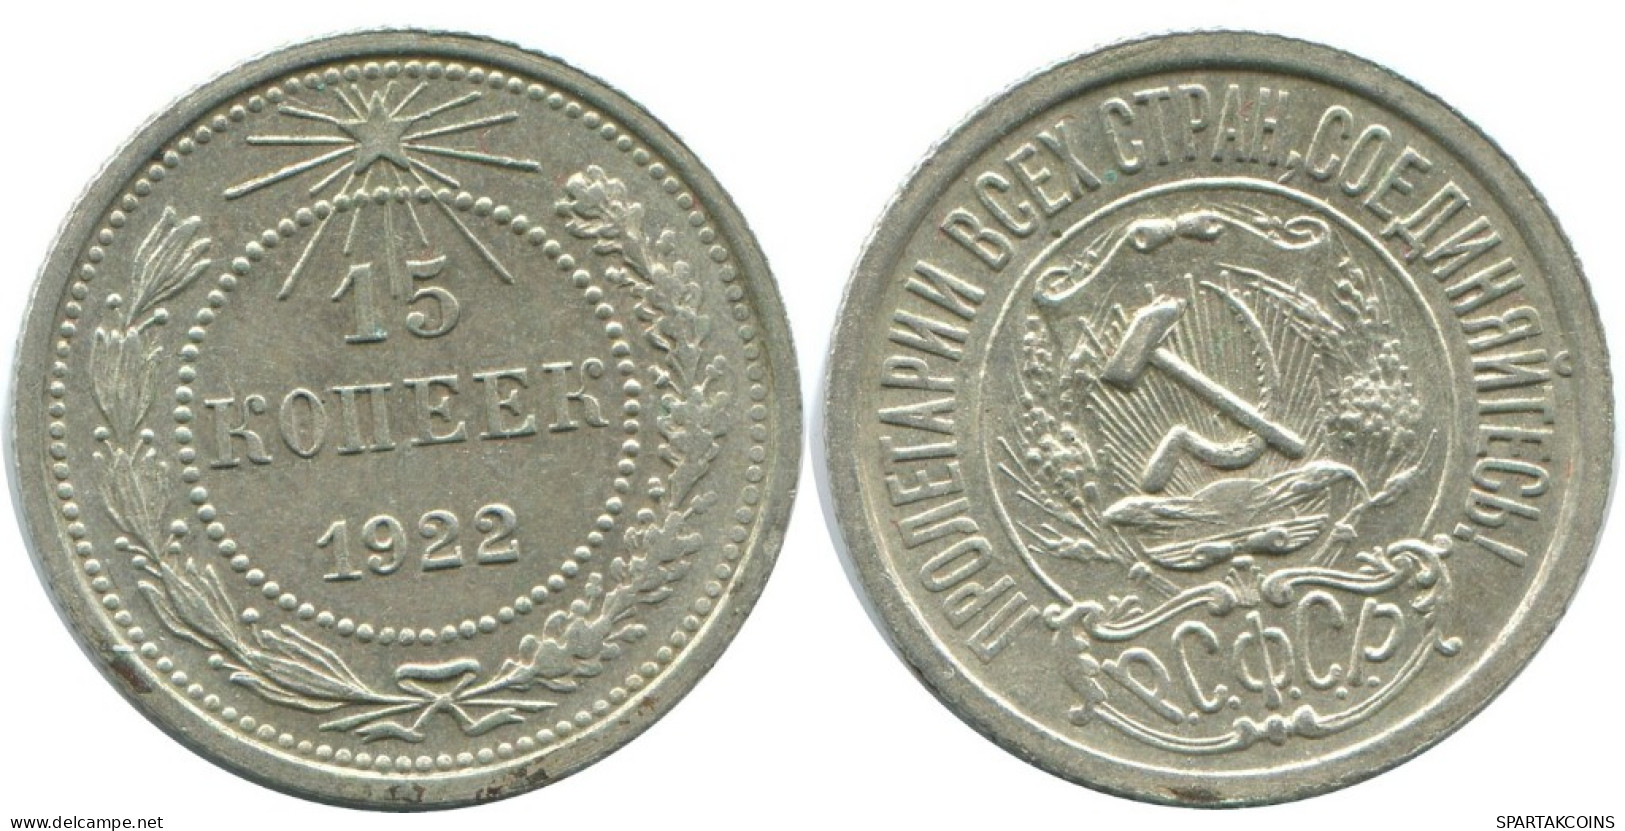 15 KOPEKS 1922 RUSSIA RSFSR SILVER Coin HIGH GRADE #AF204.4.U.A - Russland